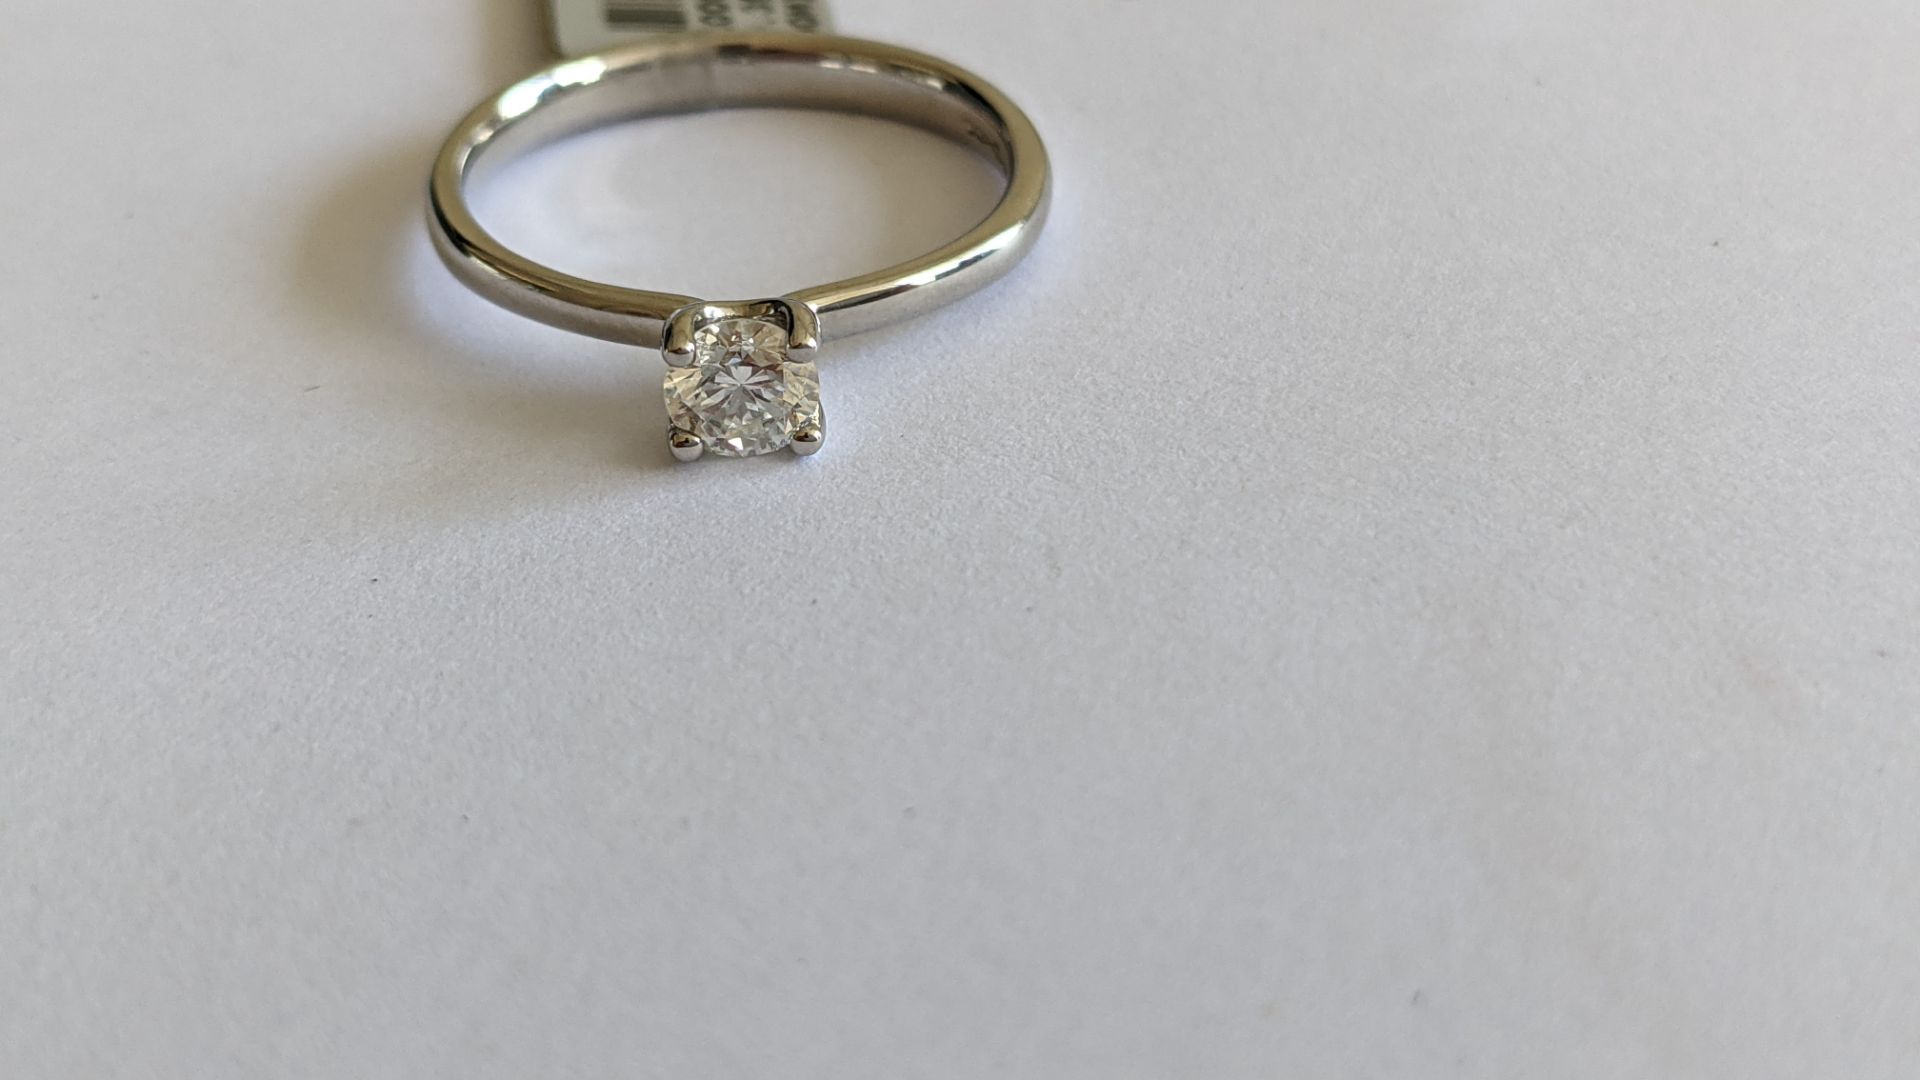 Single stone diamond & platinum 950 ring with 0.35ct H/Si diamond, RRP £1,507 - Image 26 of 29